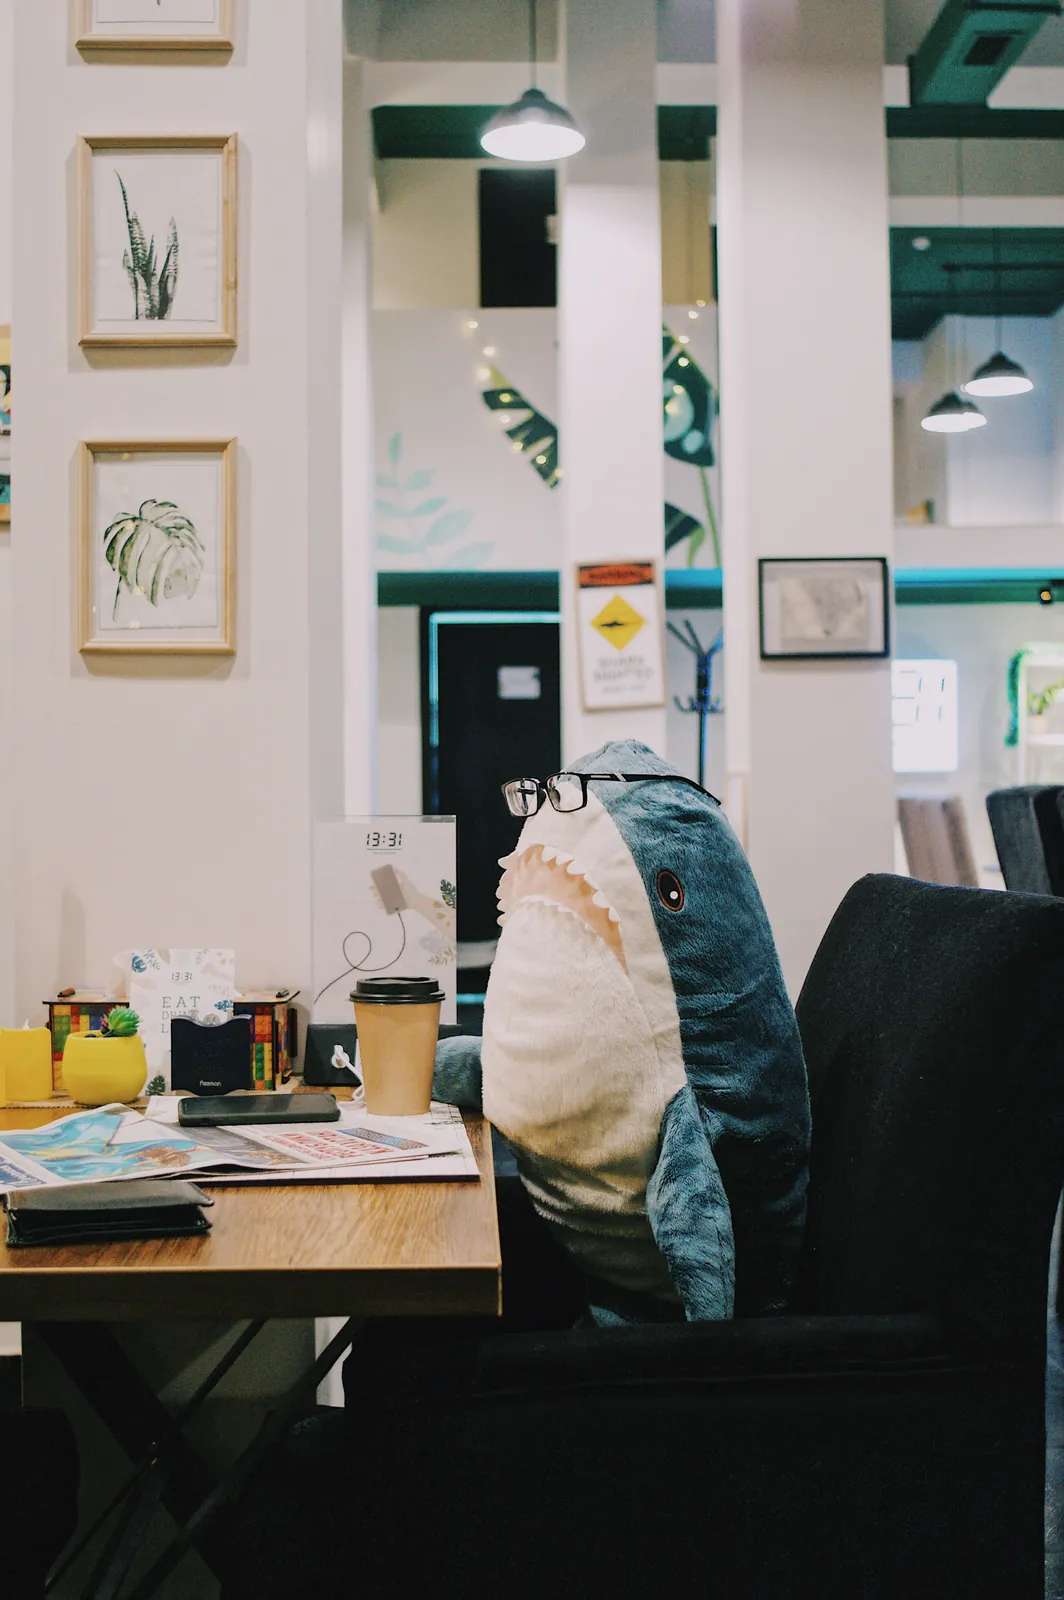 Image d’un Blaja portant des lunettes, il est mega posay devant un bureau avec son mug de café | Symphonie of Code, Agence informatique, hébergement, et services numériques en Lozère 